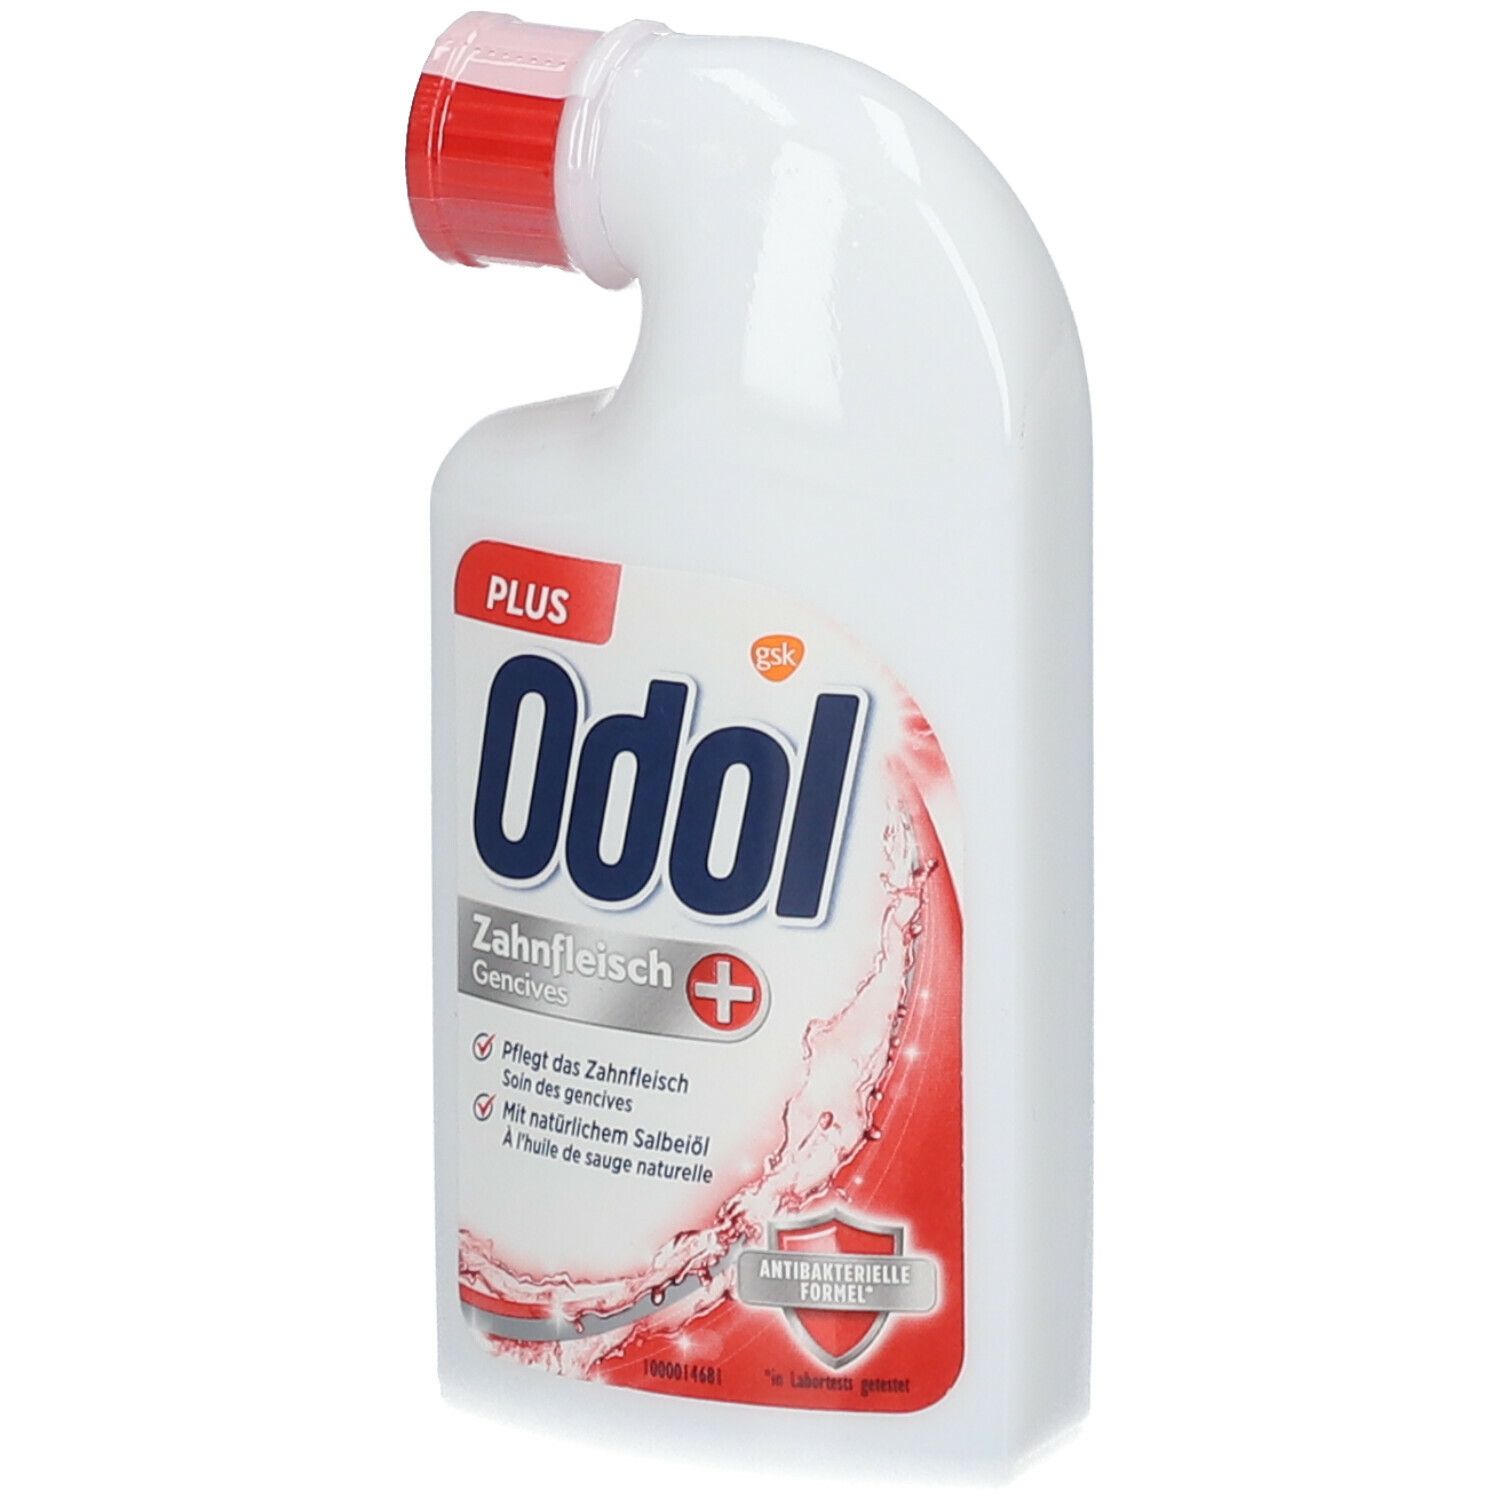 Odol-med3® Mundwasser Plus